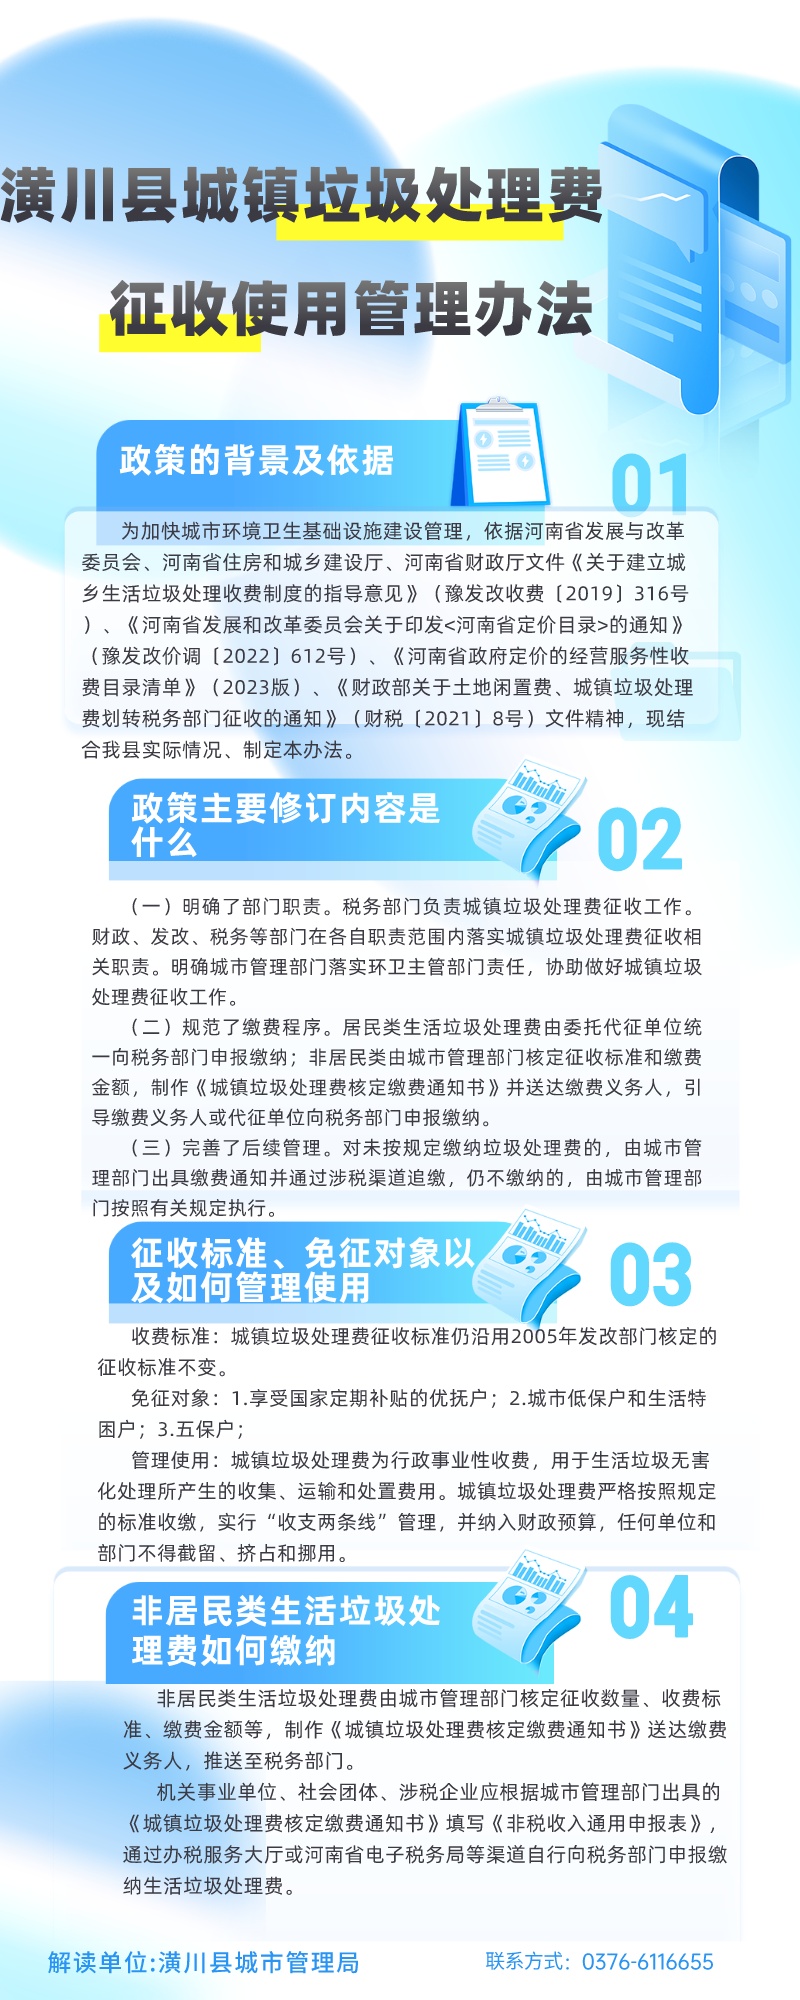 【图片解读】潢川县城镇垃圾处理费征收使用管理办法